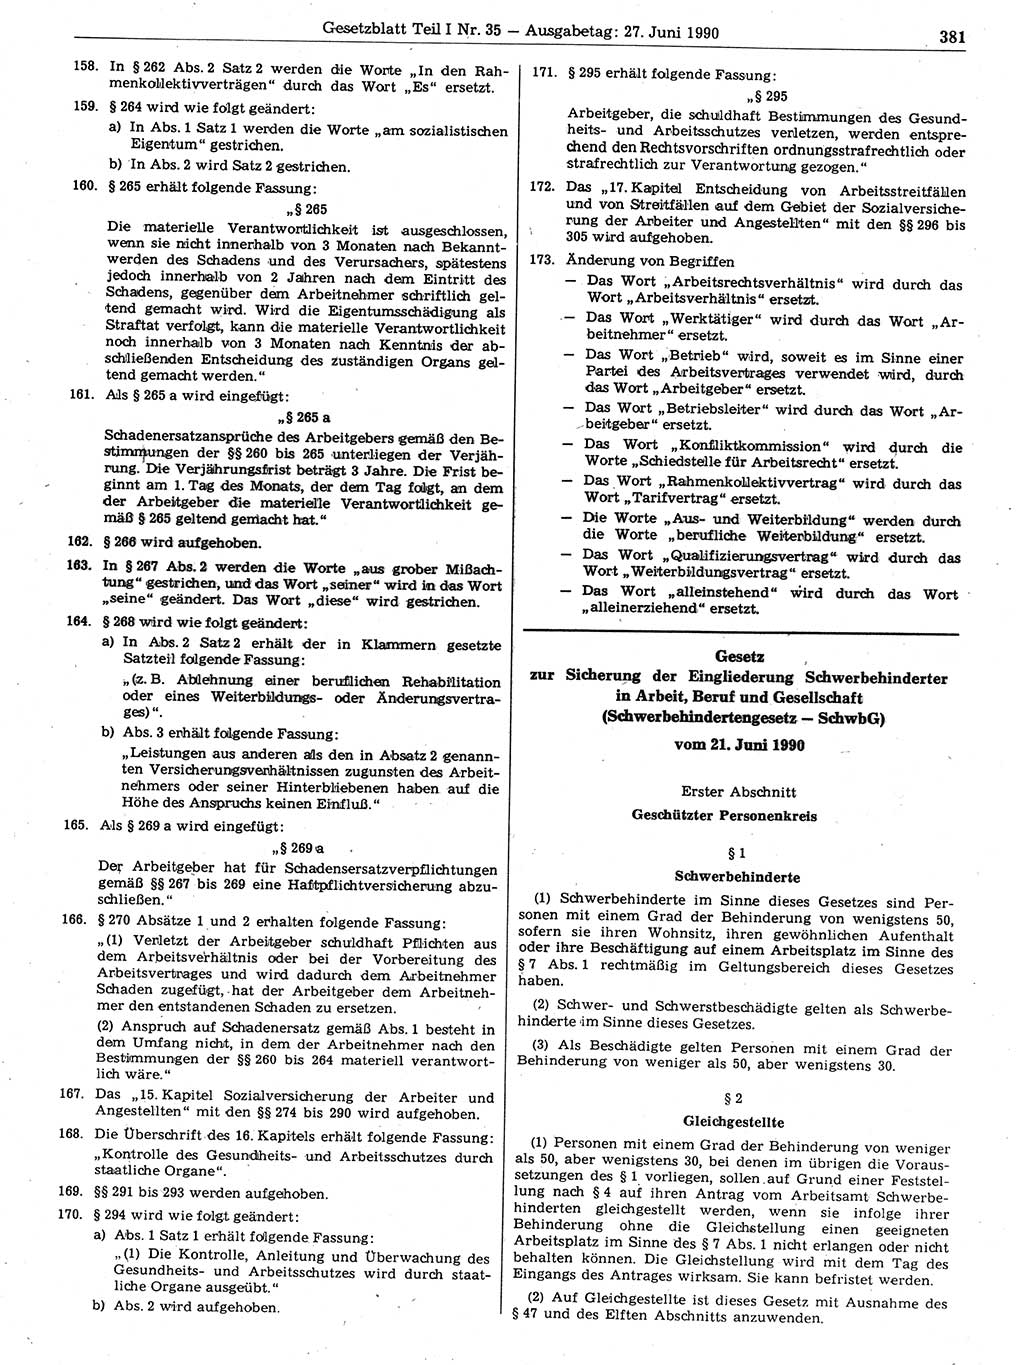 Gesetzblatt (GBl.) der Deutschen Demokratischen Republik (DDR) Teil Ⅰ 1990, Seite 381 (GBl. DDR Ⅰ 1990, S. 381)